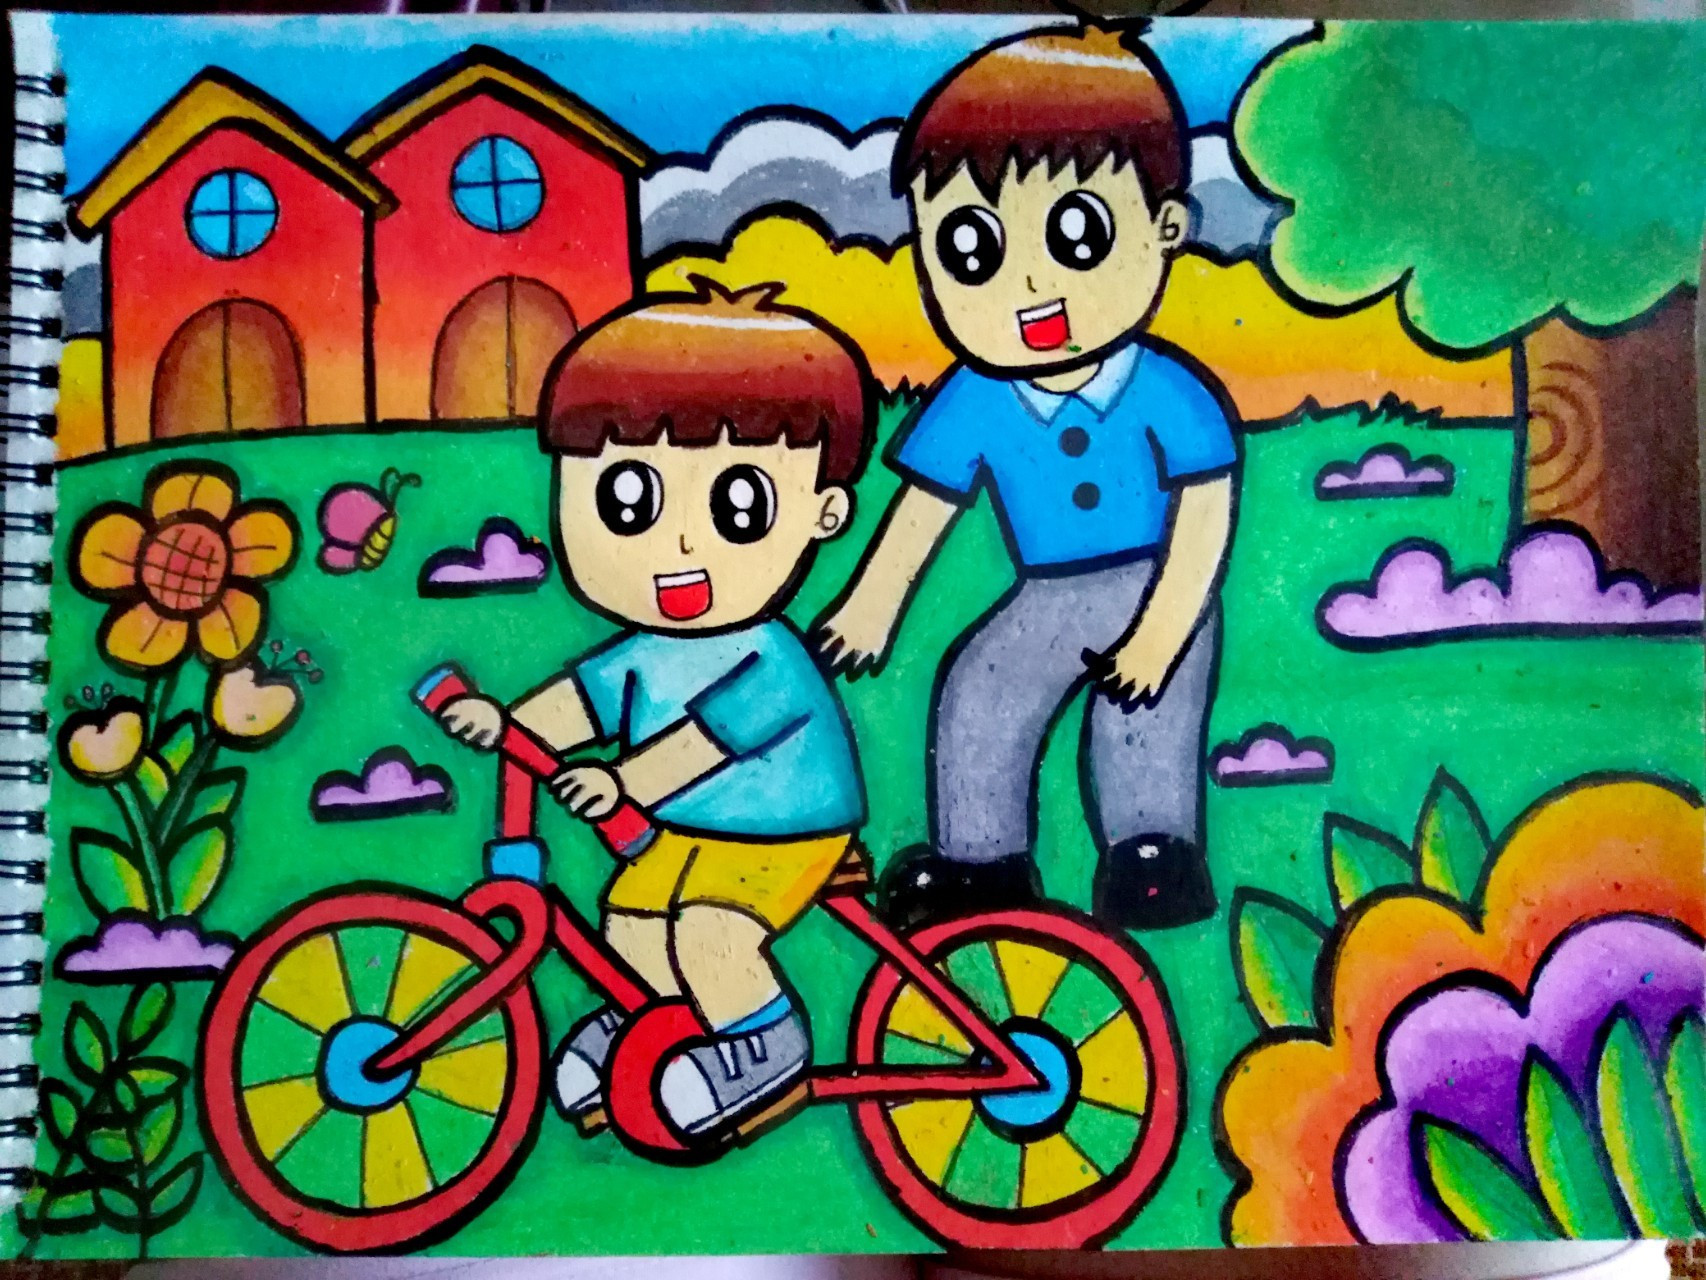 学骑自行车(原创) 主题画更新喽～ 这次的主题是学骑自行车 油画棒